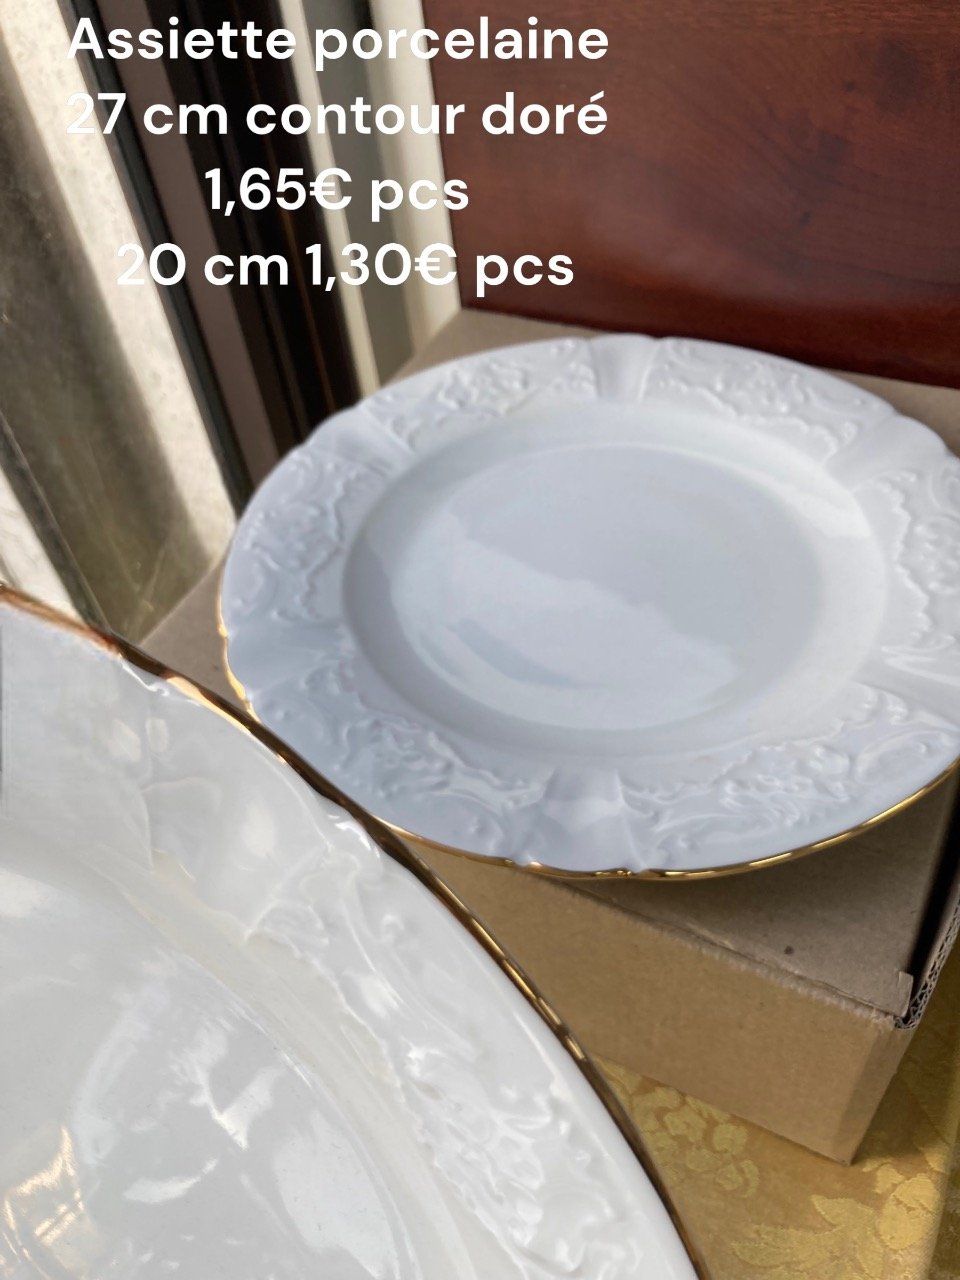 Assiette porcelaine contour doré 20 cm